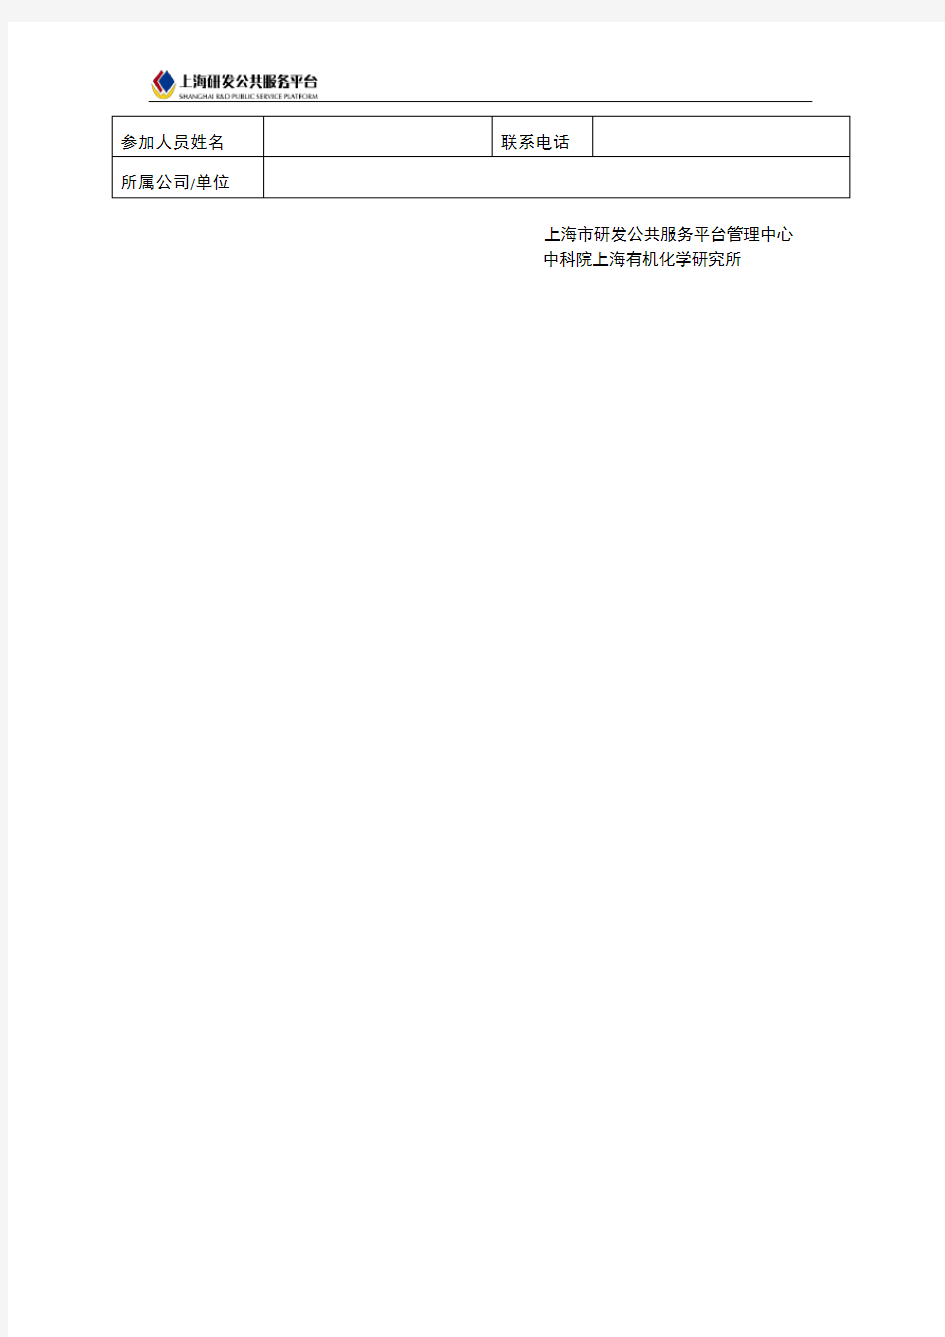 (最新售后服务文档)上海研发公共服务平台上海化学化工数据中心(筹)